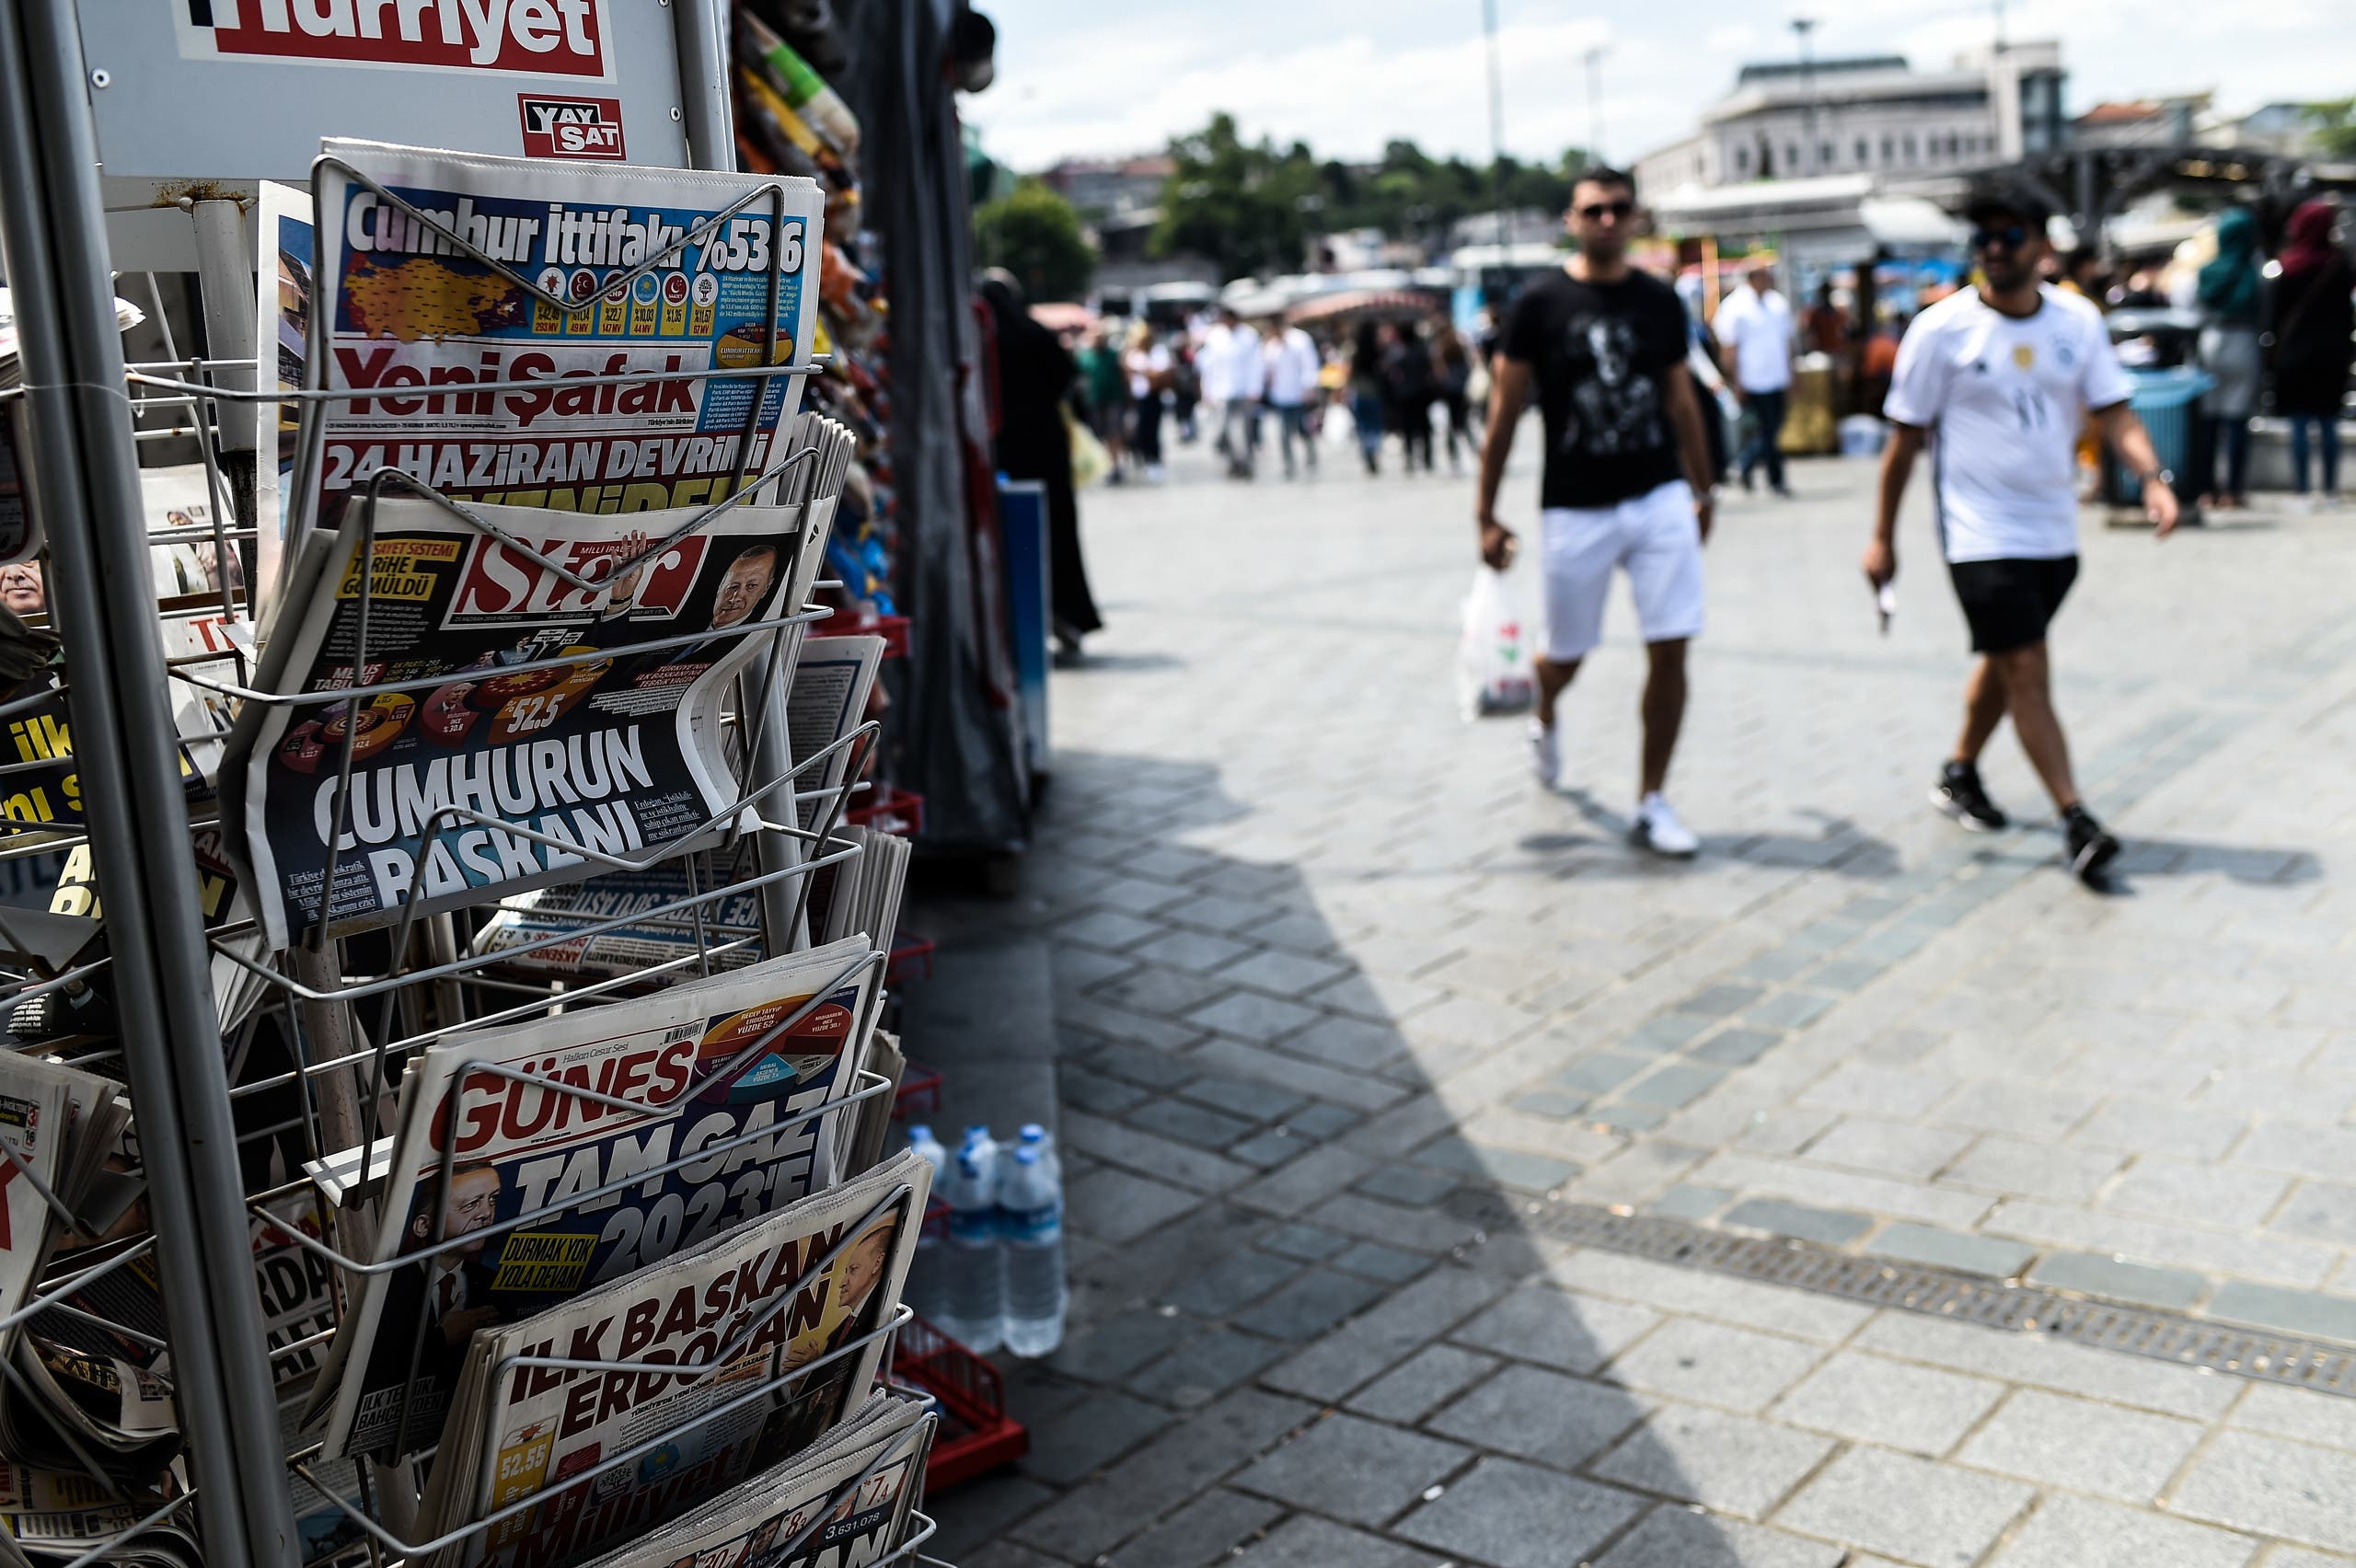 صحف في أحد الأكشاك في اسكنبول (تعبيرية)